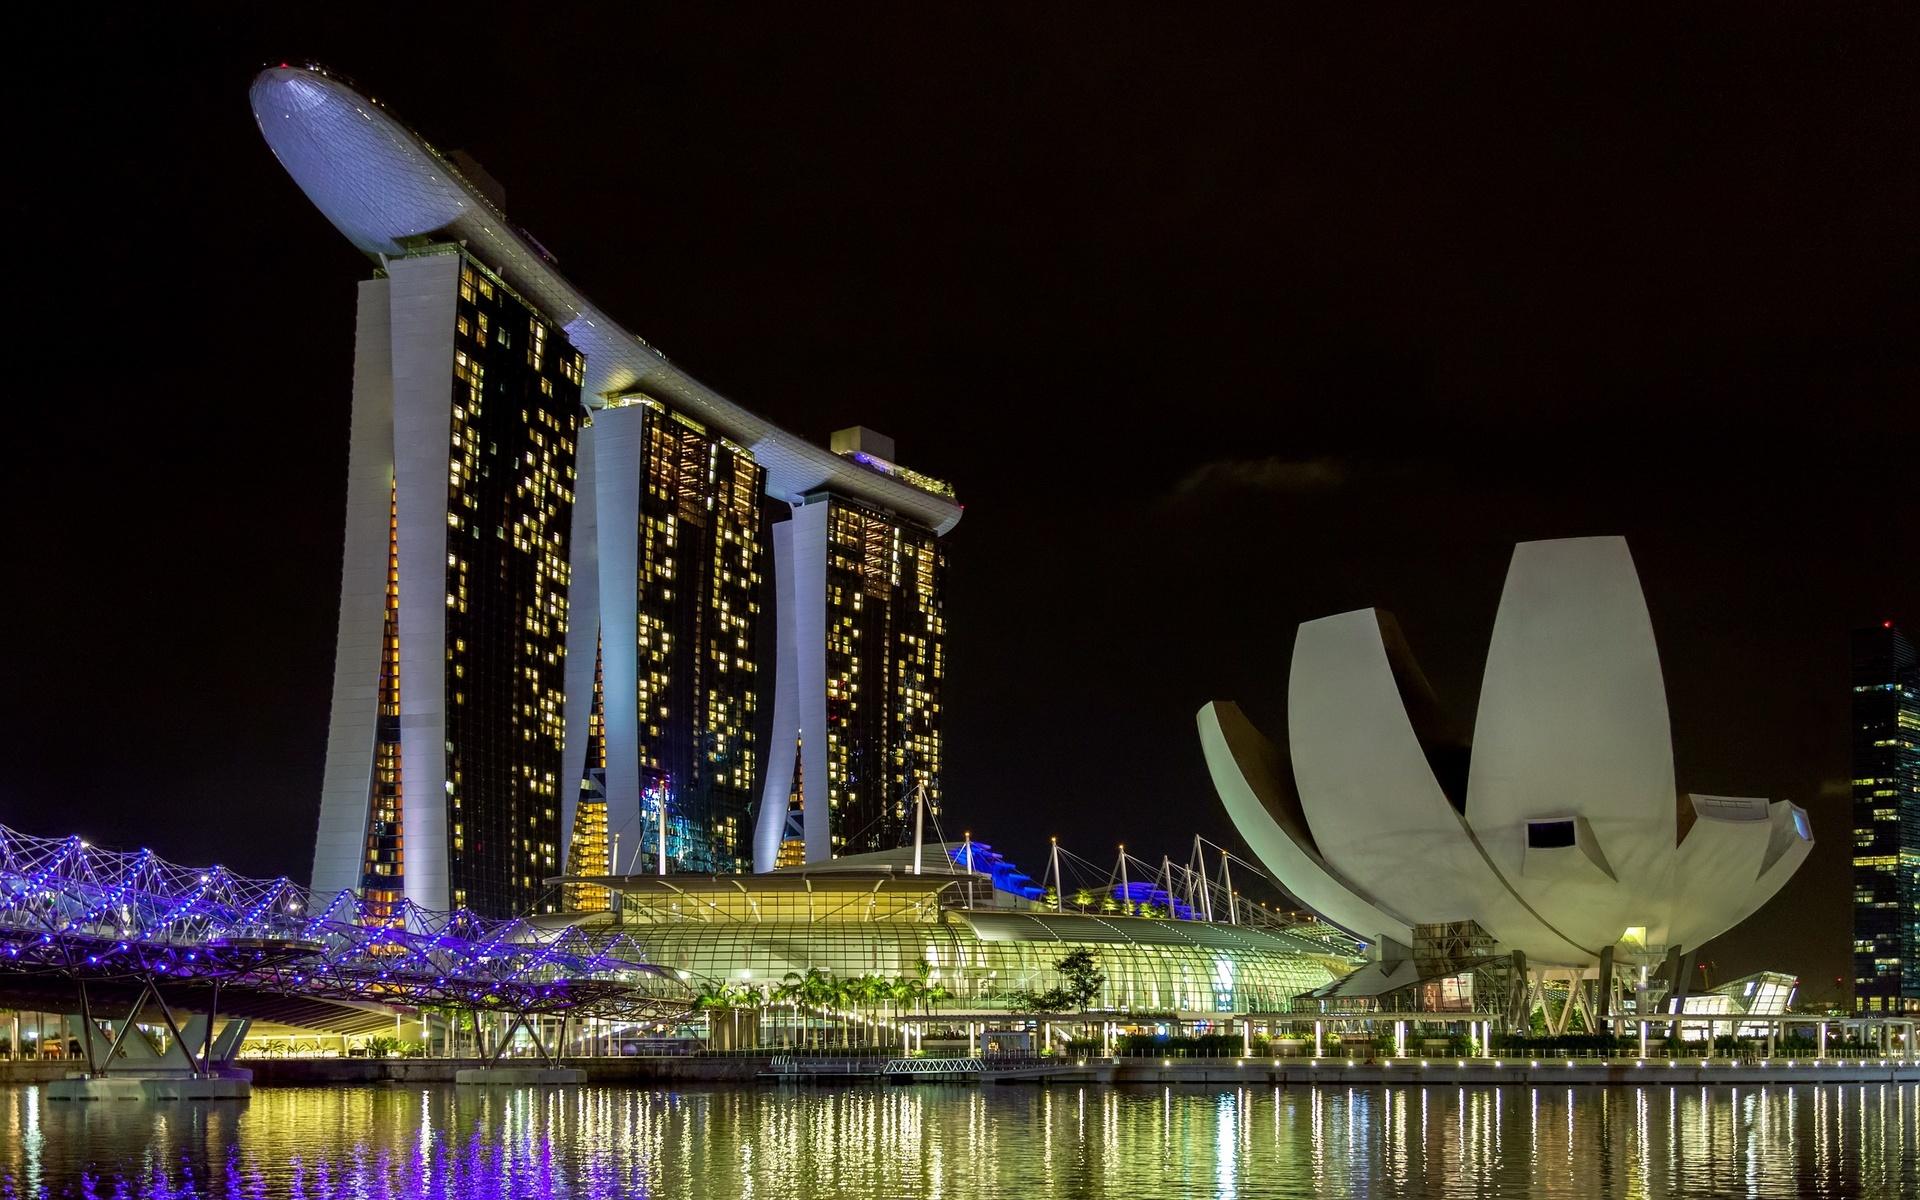 Singapore hamnar på en förstaplats tillsammans med Japan och får enligt Henley Passport Index 192 poäng. På bilder ser vi det kända hotellet Marina Bay Sands i Singapore.